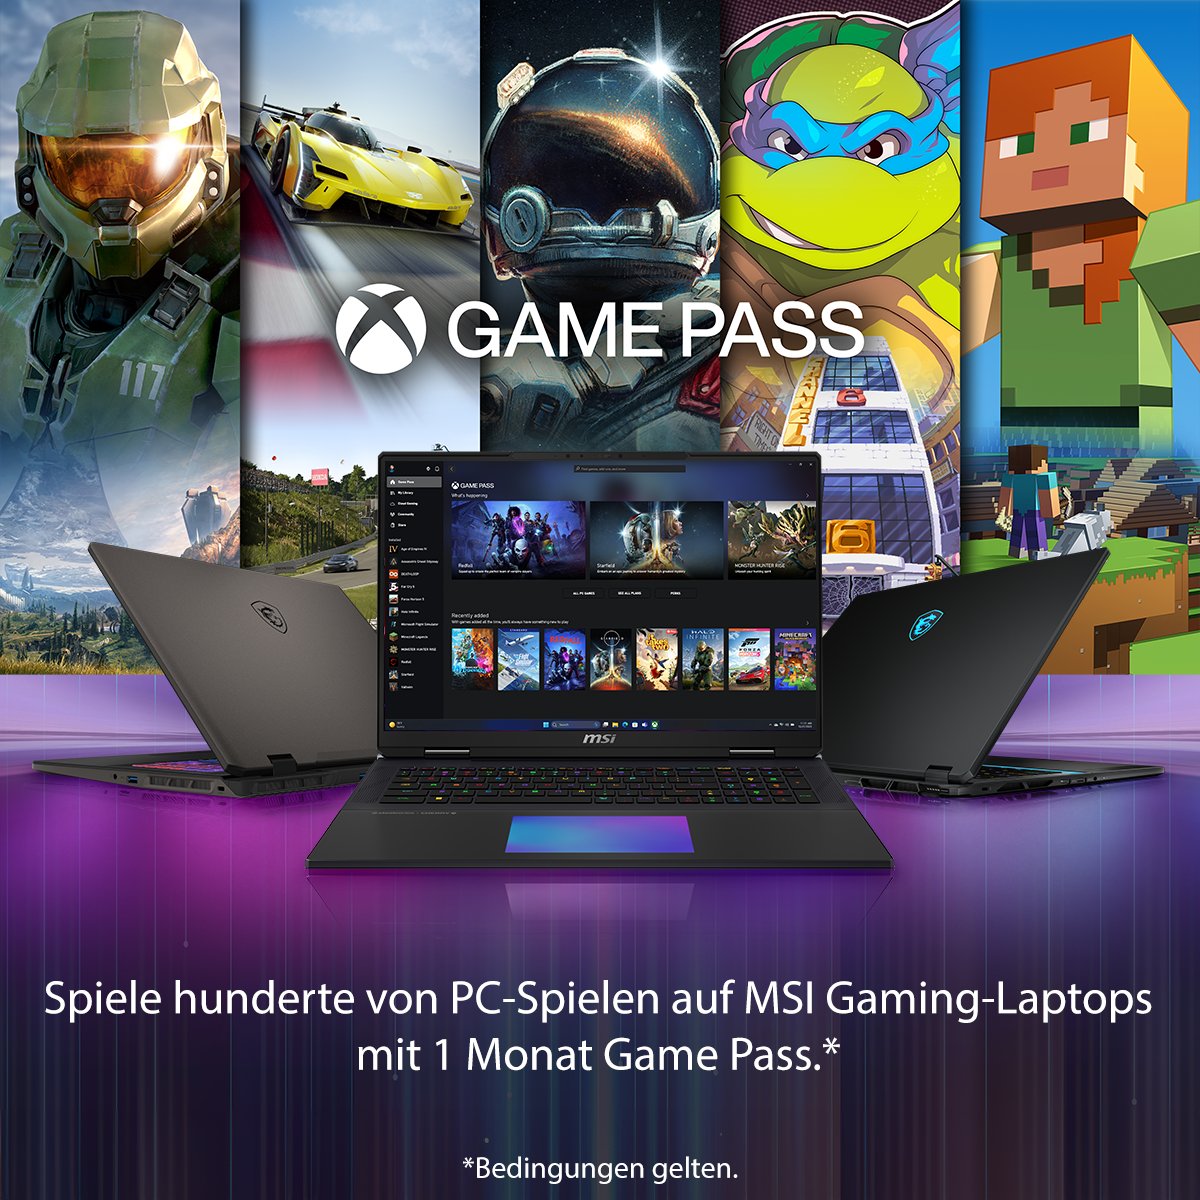 Achtung, Gamer! 👀 Wusstest du, dass 1 Monat Xbox Game Pass in deinem neuen MSI Gerät enthalten ist? Löse ihn jetzt ein, um Hunderte von PC-Spielen darauf zu spielen! 🎮